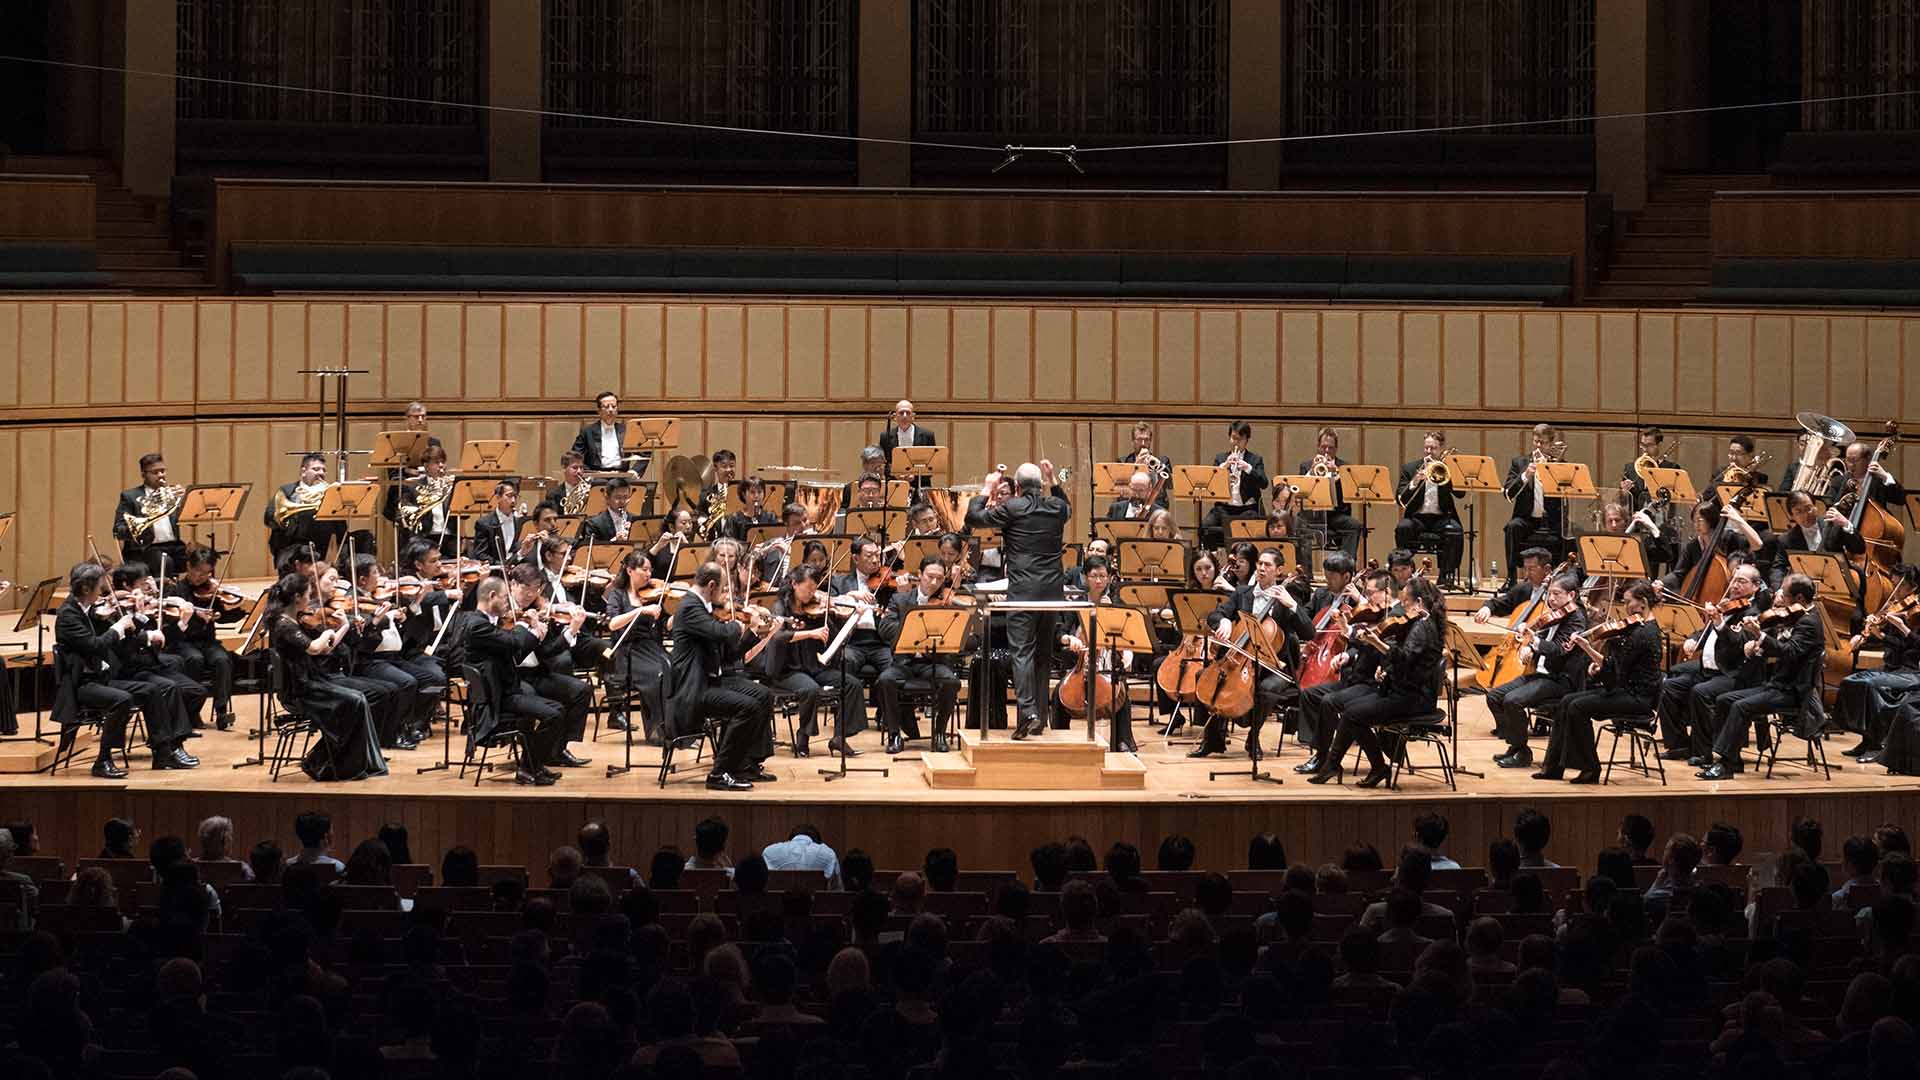 Raffles Singapore - Singapore Symphony Orchestra: Magic Hour